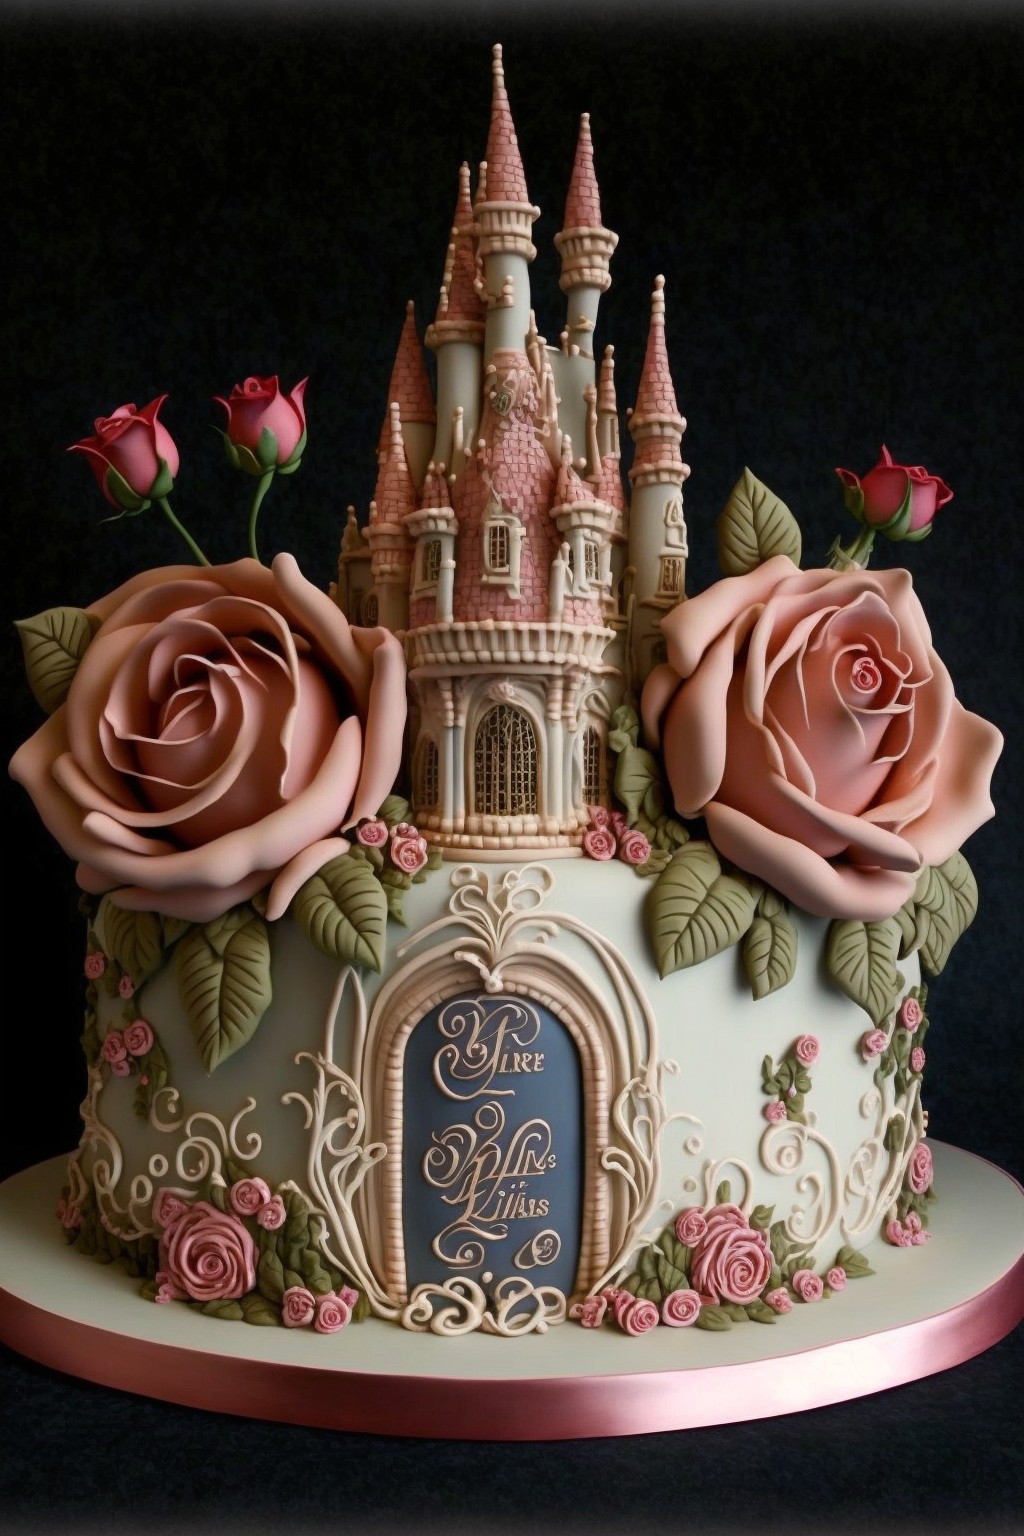 超级精美的城堡蛋糕